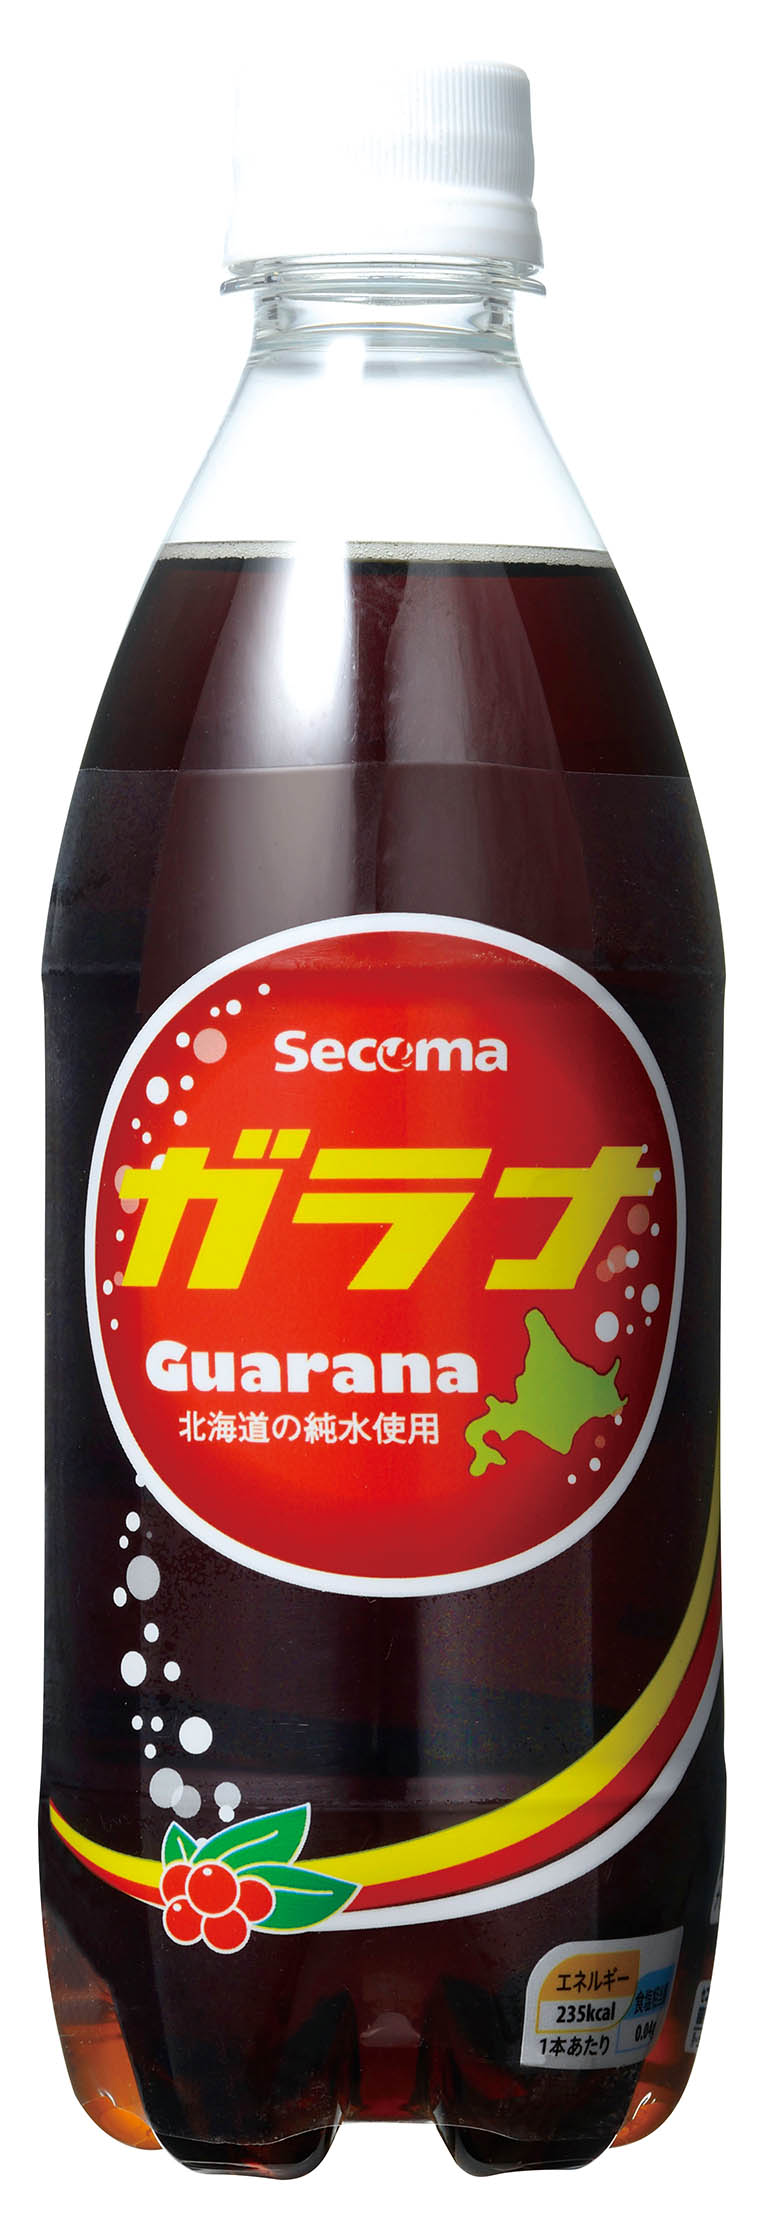 Secoma ガラナ 500ml 24本入 セイコーマート公式通販